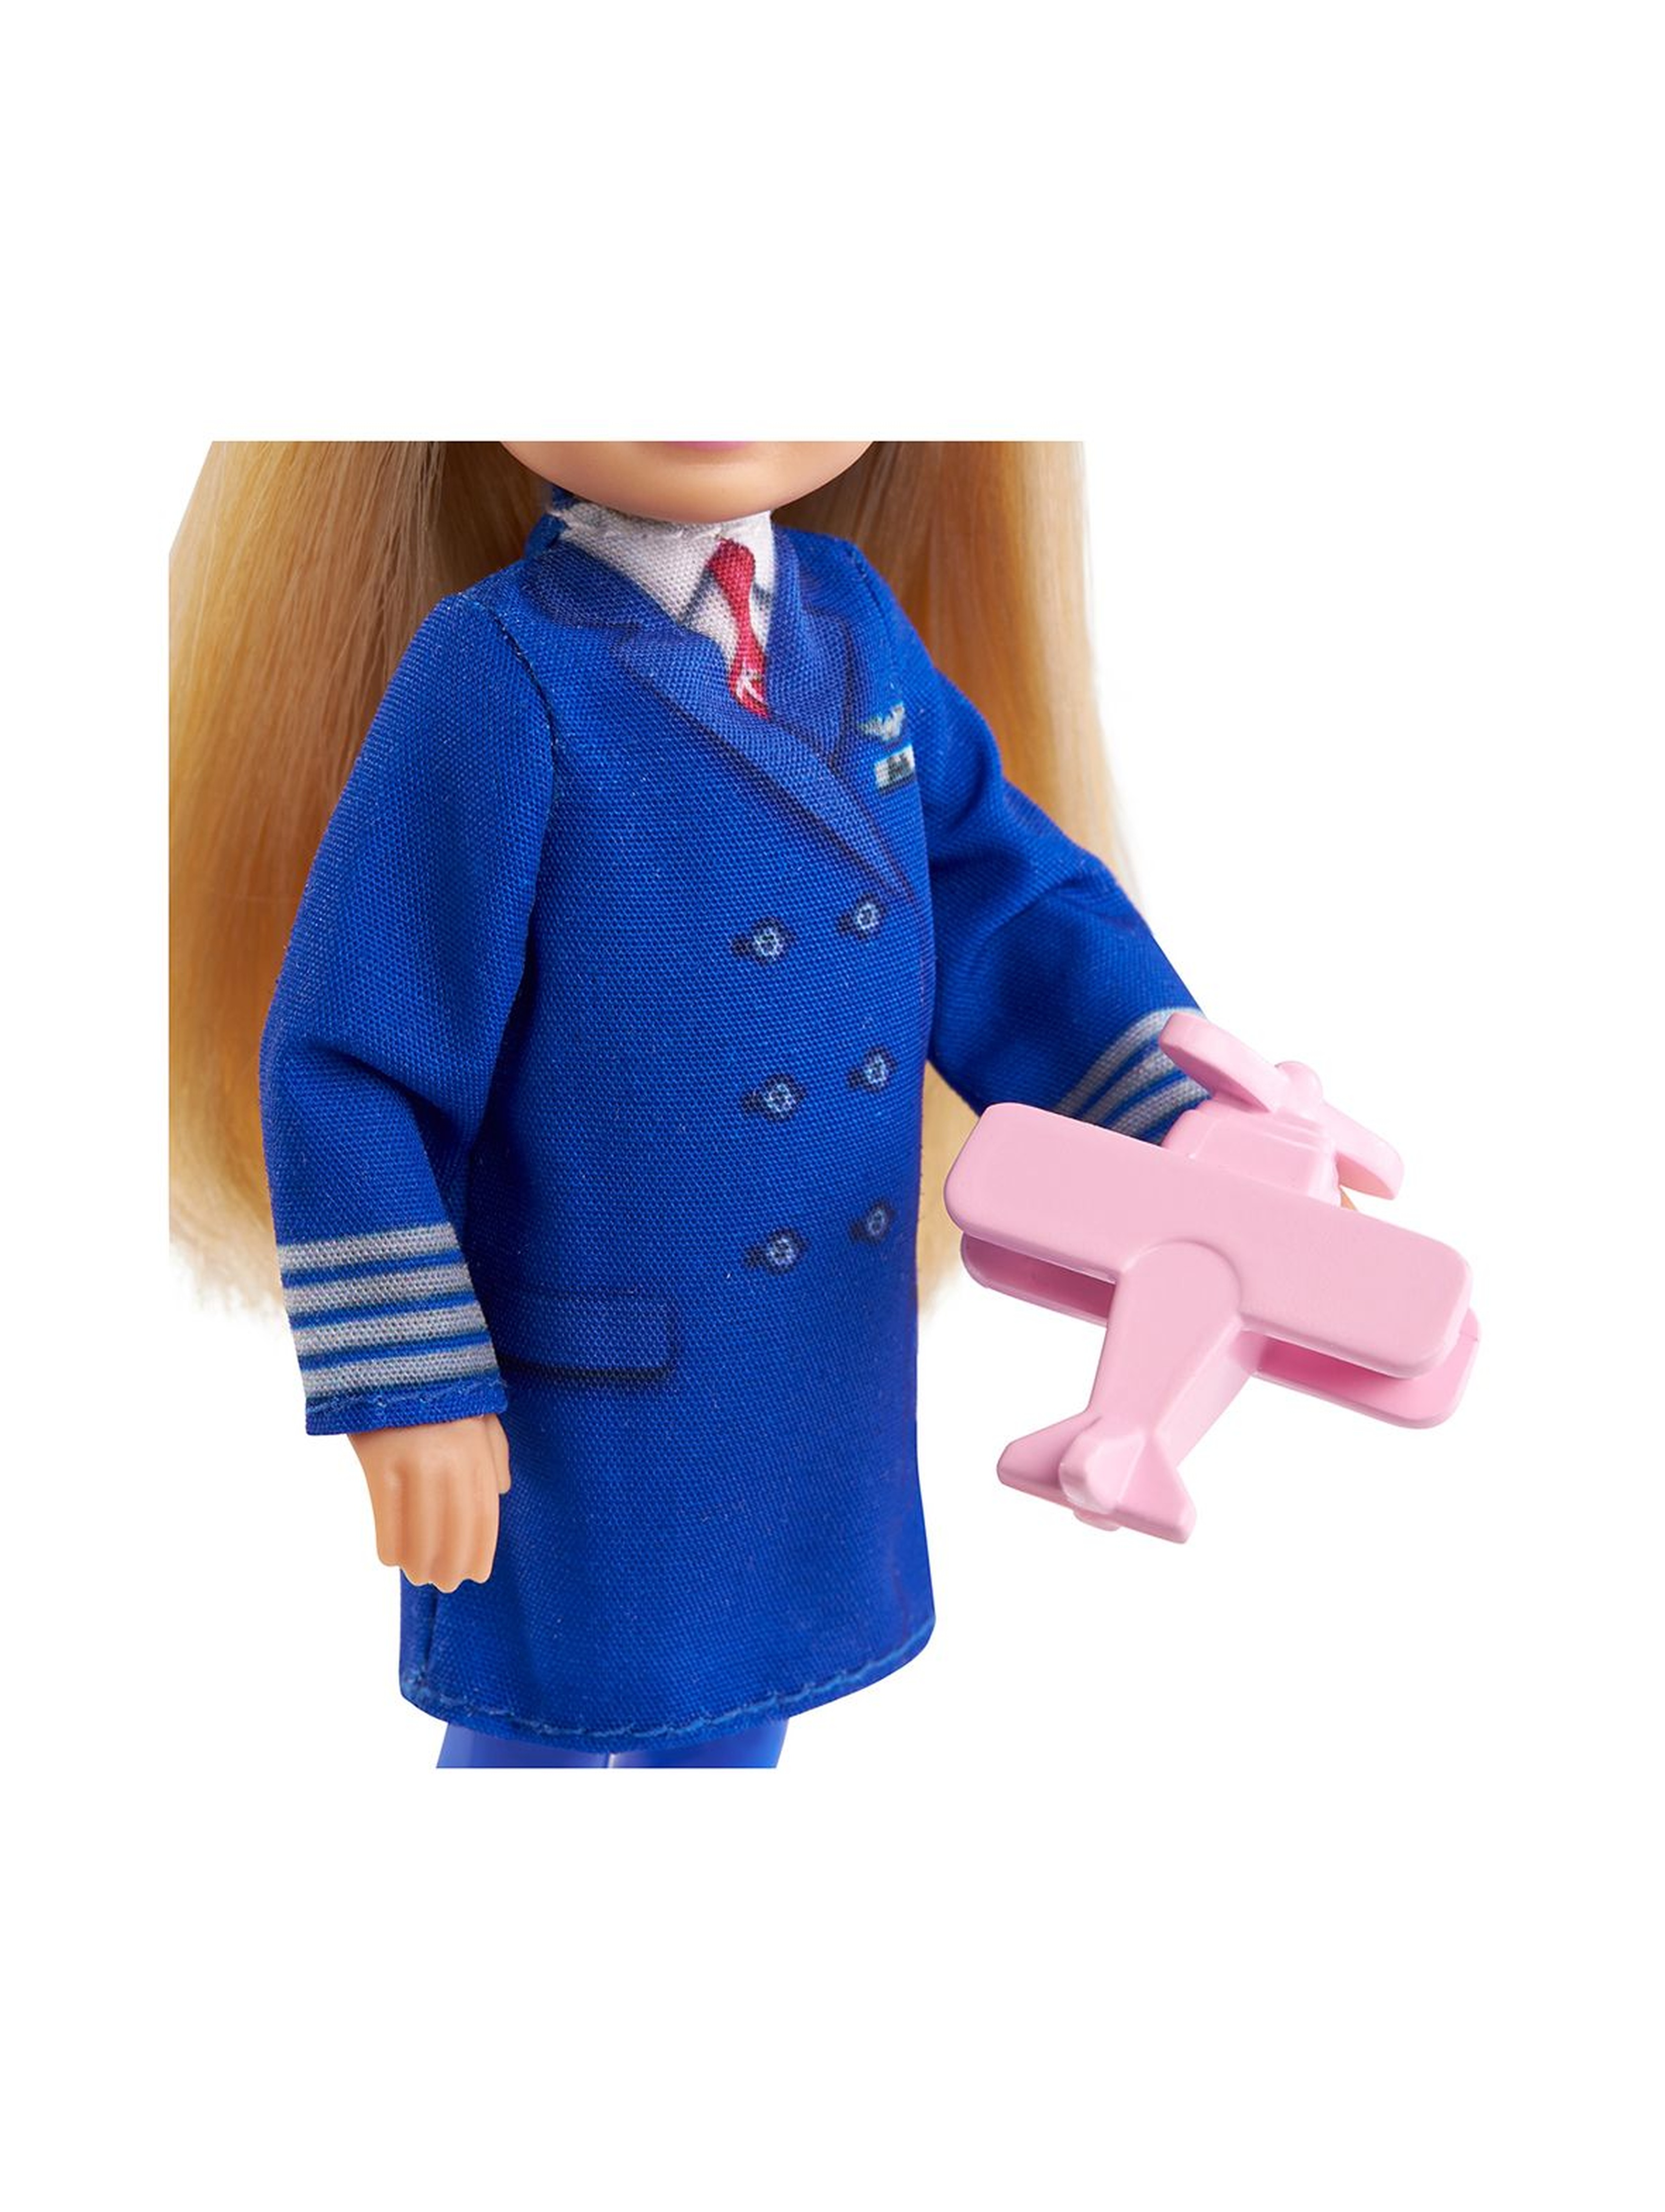 Barbie Chelsea - Możesz być Kariera - Lalka Pilotka